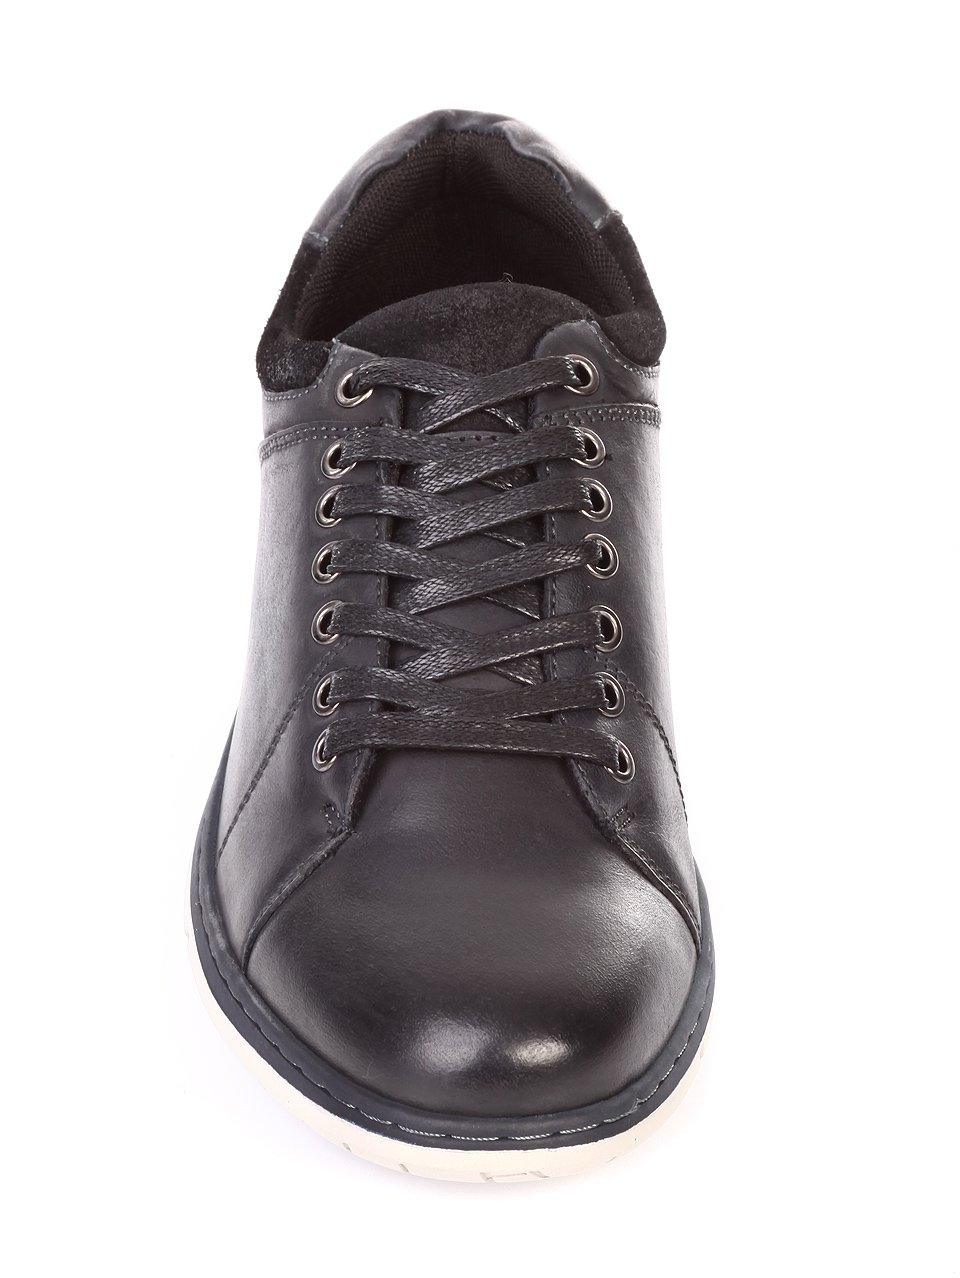 Ежедневни мъжки обувки от естествен набук 7N-18725 black